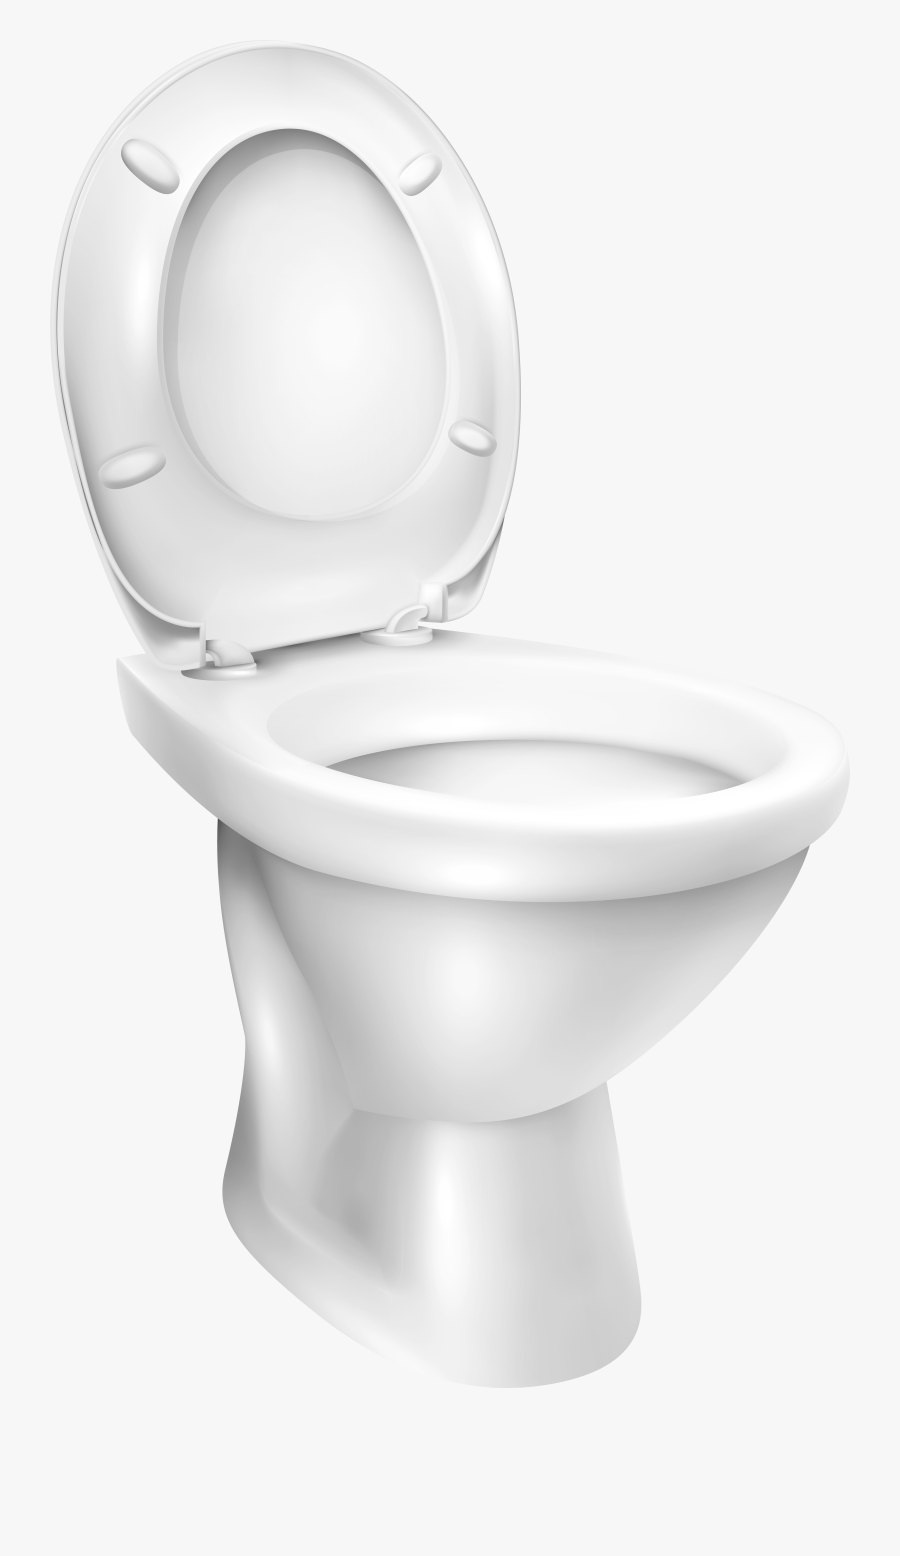 Toilet Bowl Png Clip Art - Clean Toilet Bowl Png, Transparent Clipart